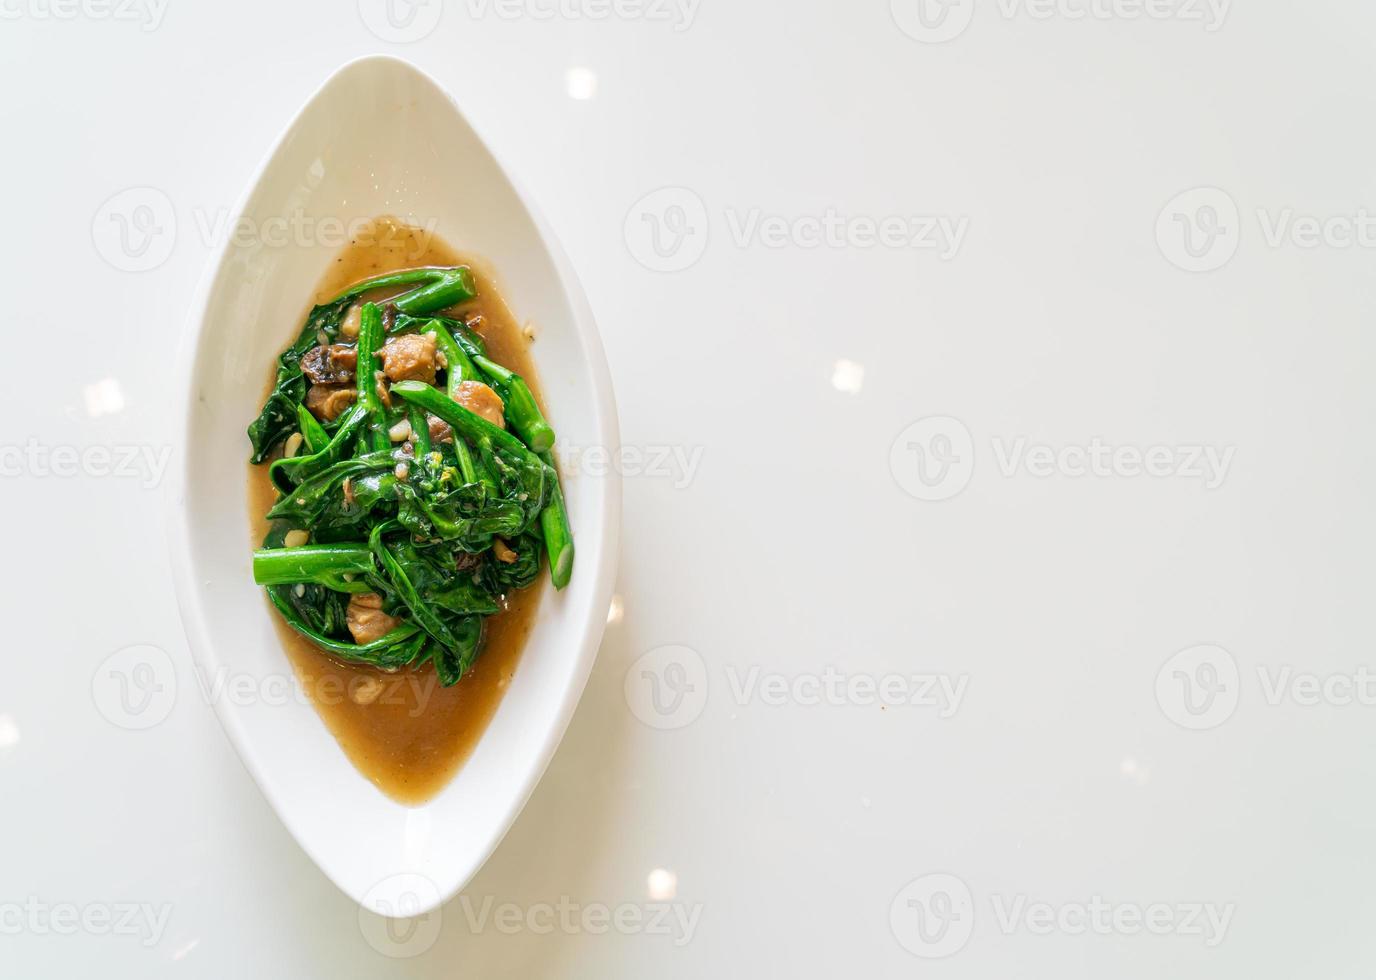 poisson salé sauté au chou frisé chinois - style cuisine asiatique photo